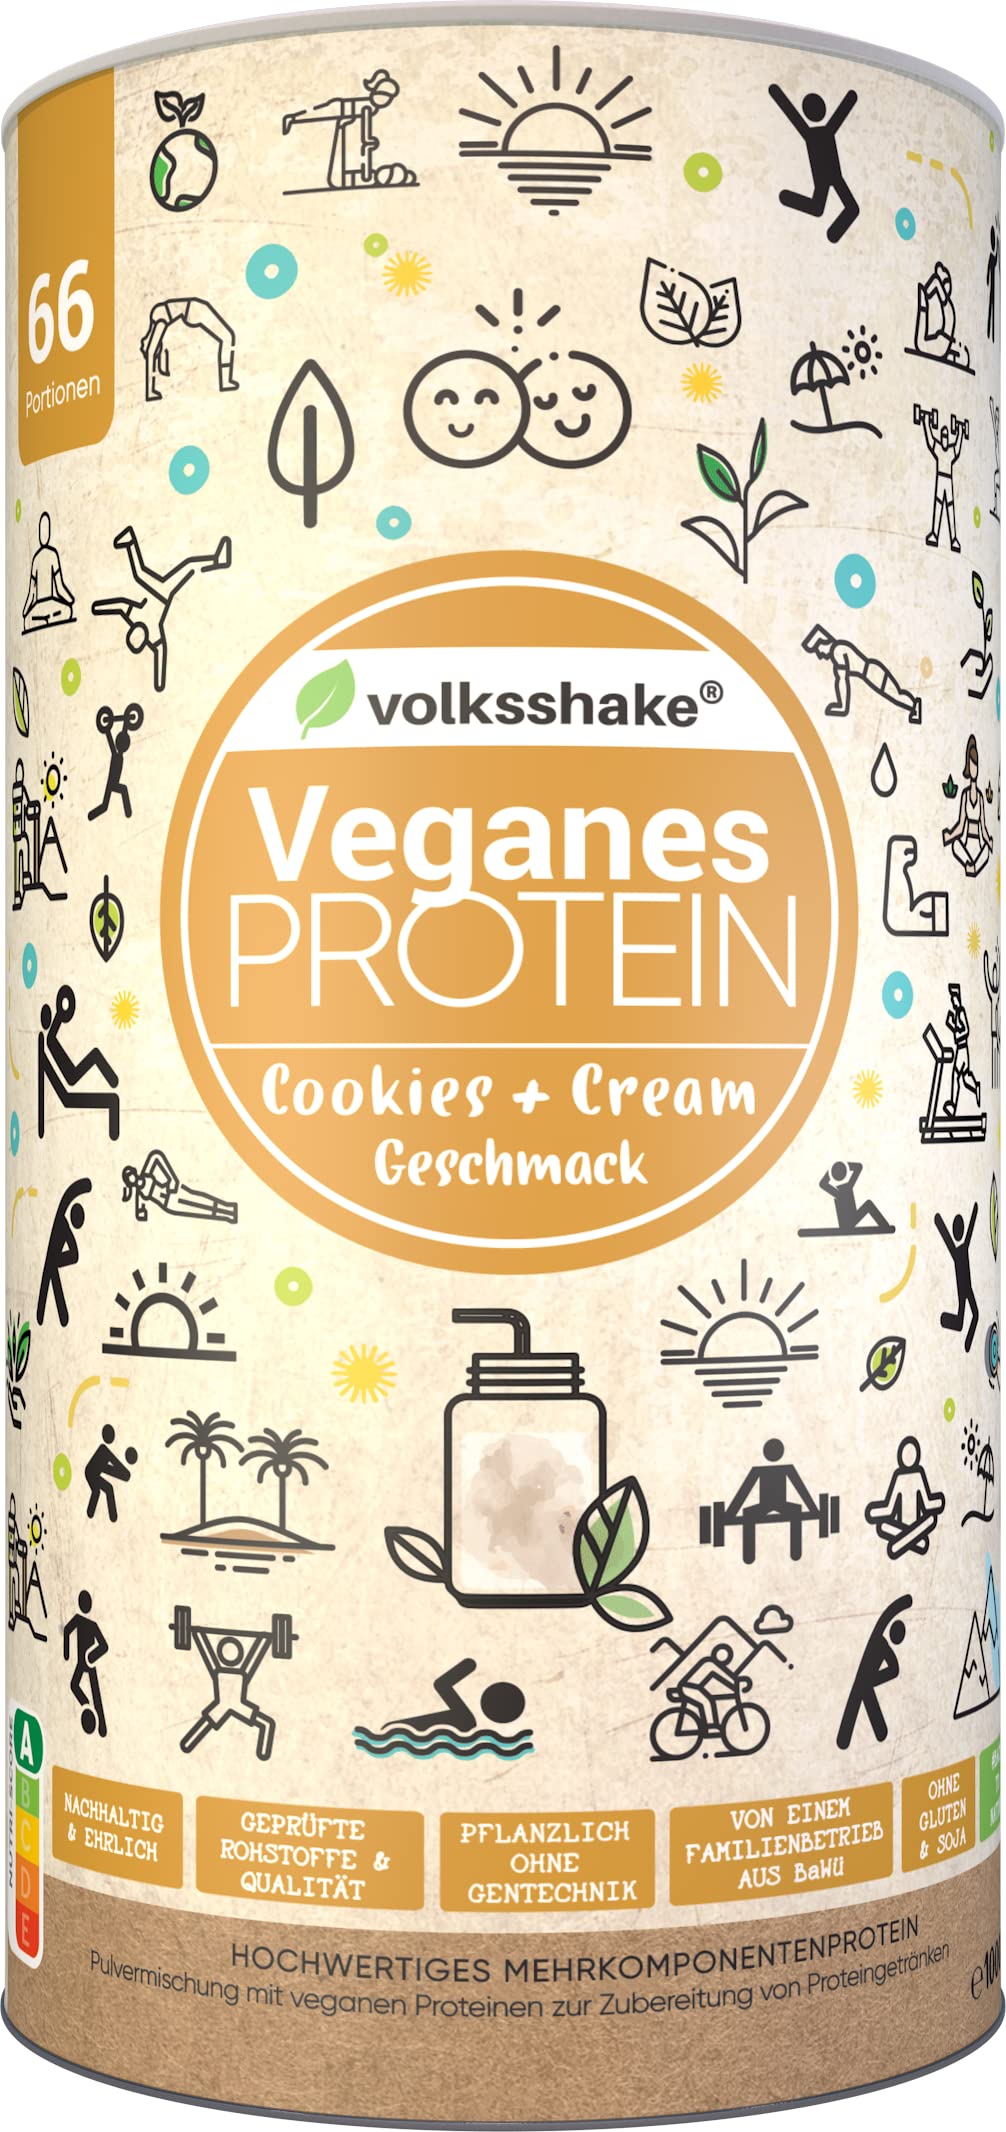 Veganes Protein Cookies & Cream | 1000g | 12 pflanzliche Proteinquellen | Ohne Soja & Gluten | Premiumqualität vom Bodensee | Made in Germany